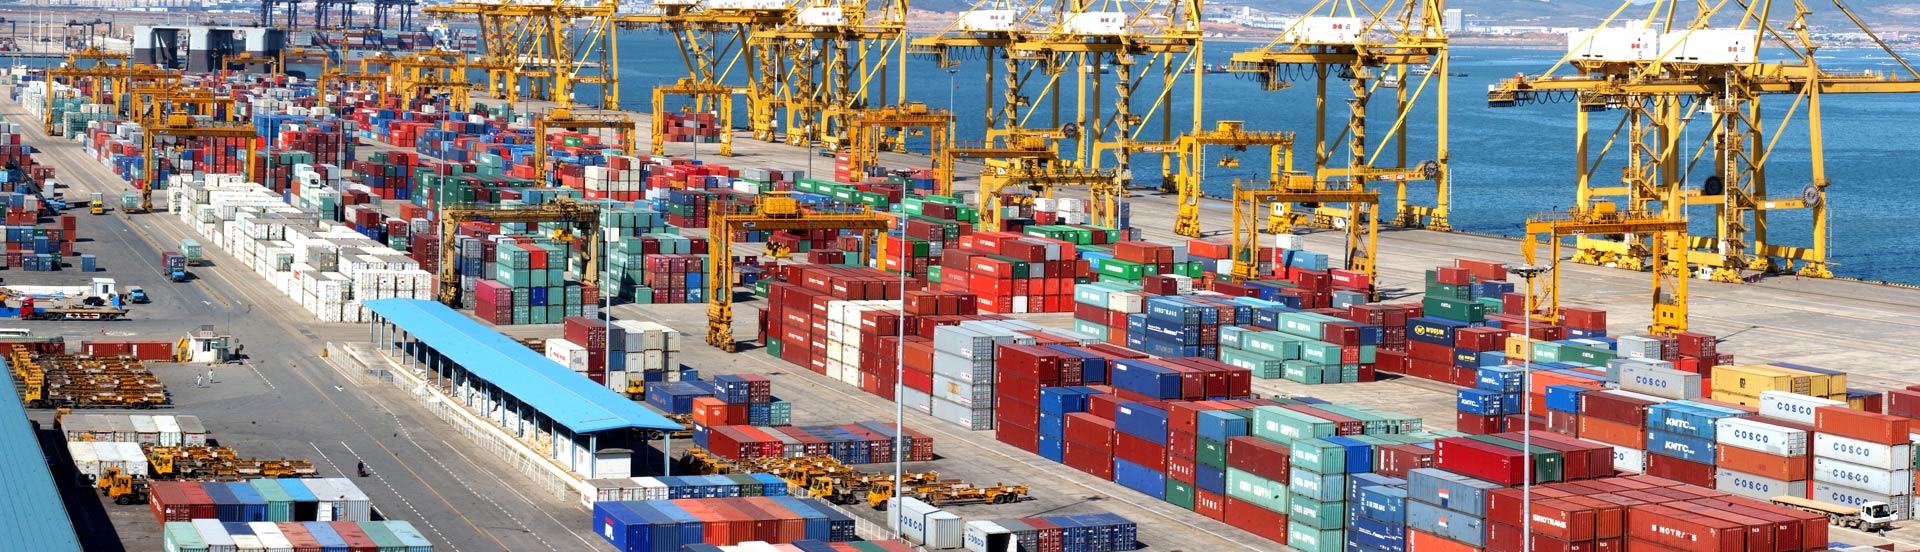 天津港到Onne, Nigeria 奥纳,尼日利亚
海运费集装箱海运费